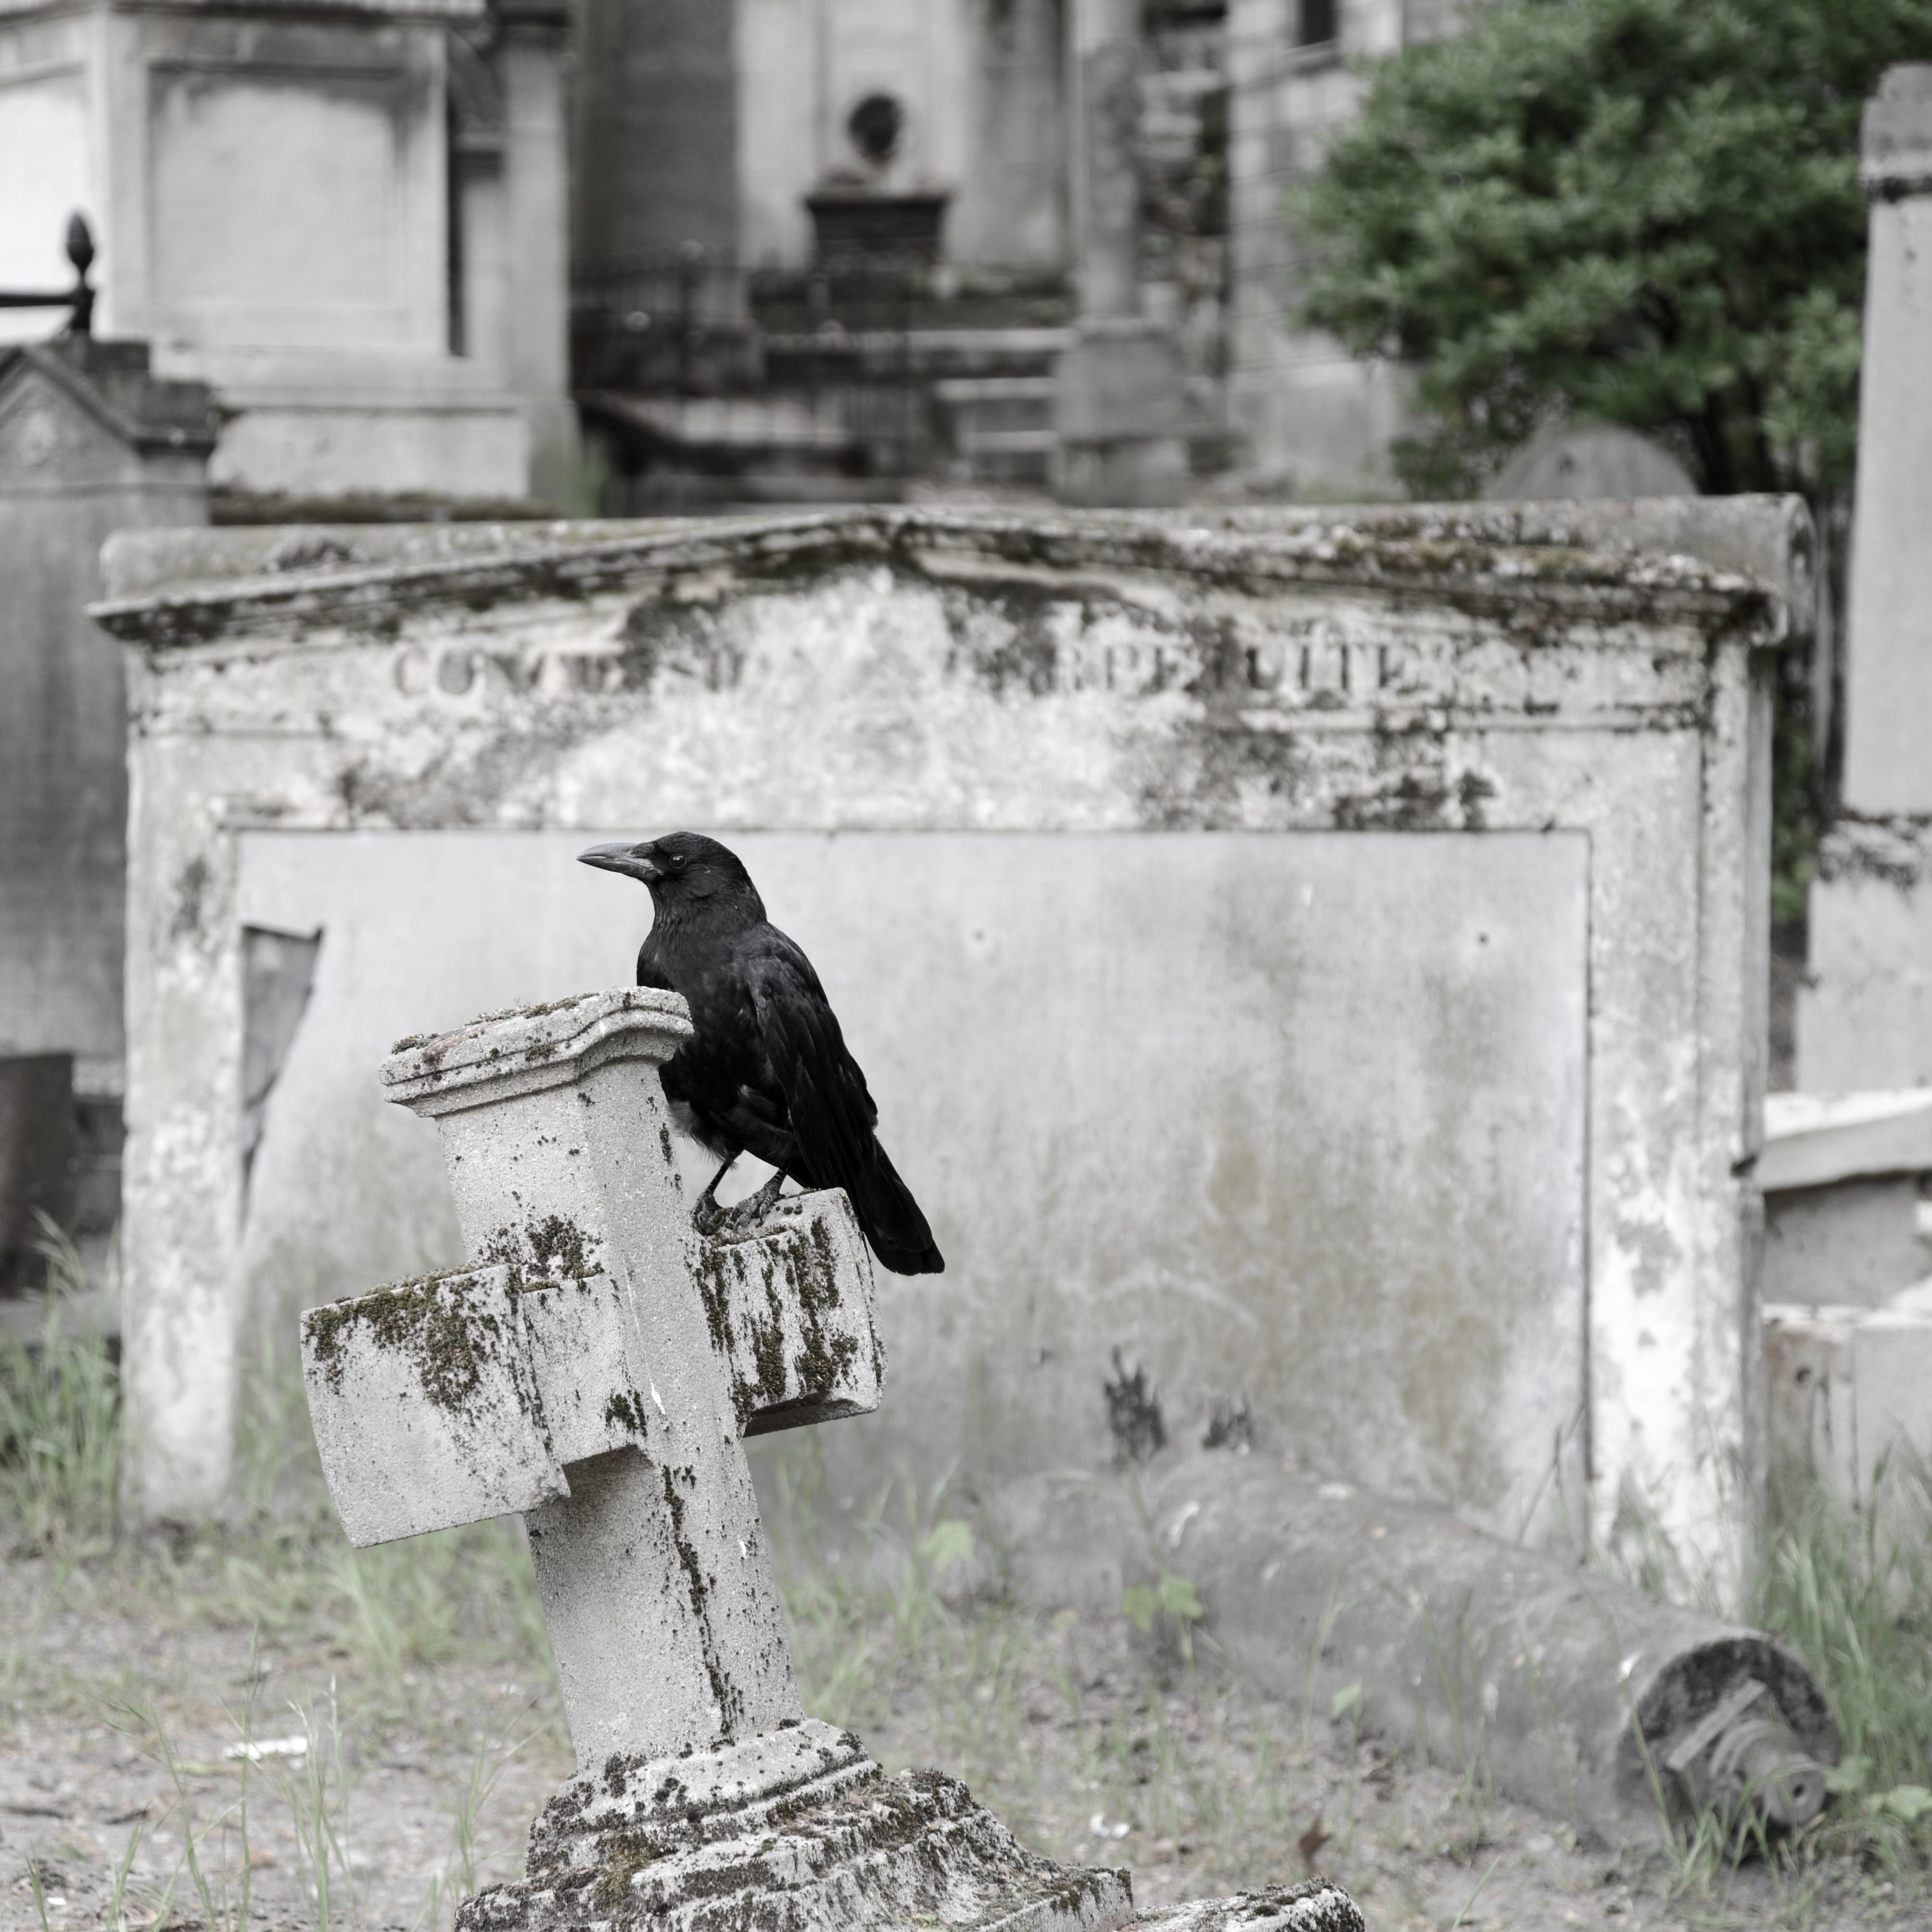 Cemetery raven, Cemetery Père-Lachaise, Paris. Photo by Dan Owen